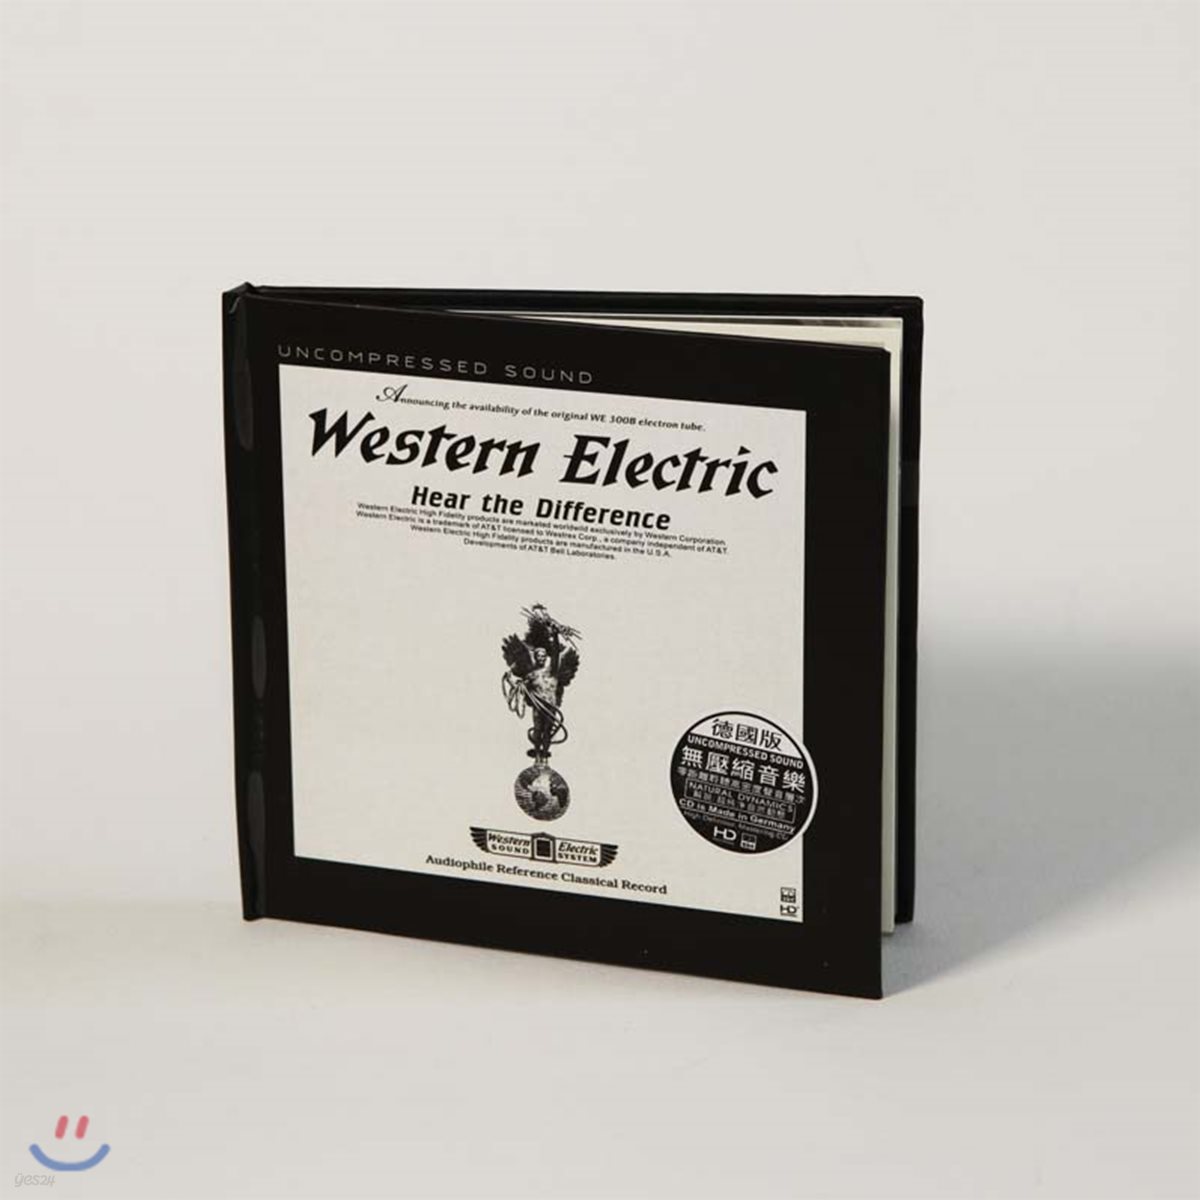 클래식 명곡 모음집 (Western Electric Sound : Audiophile Reference Classical Record)